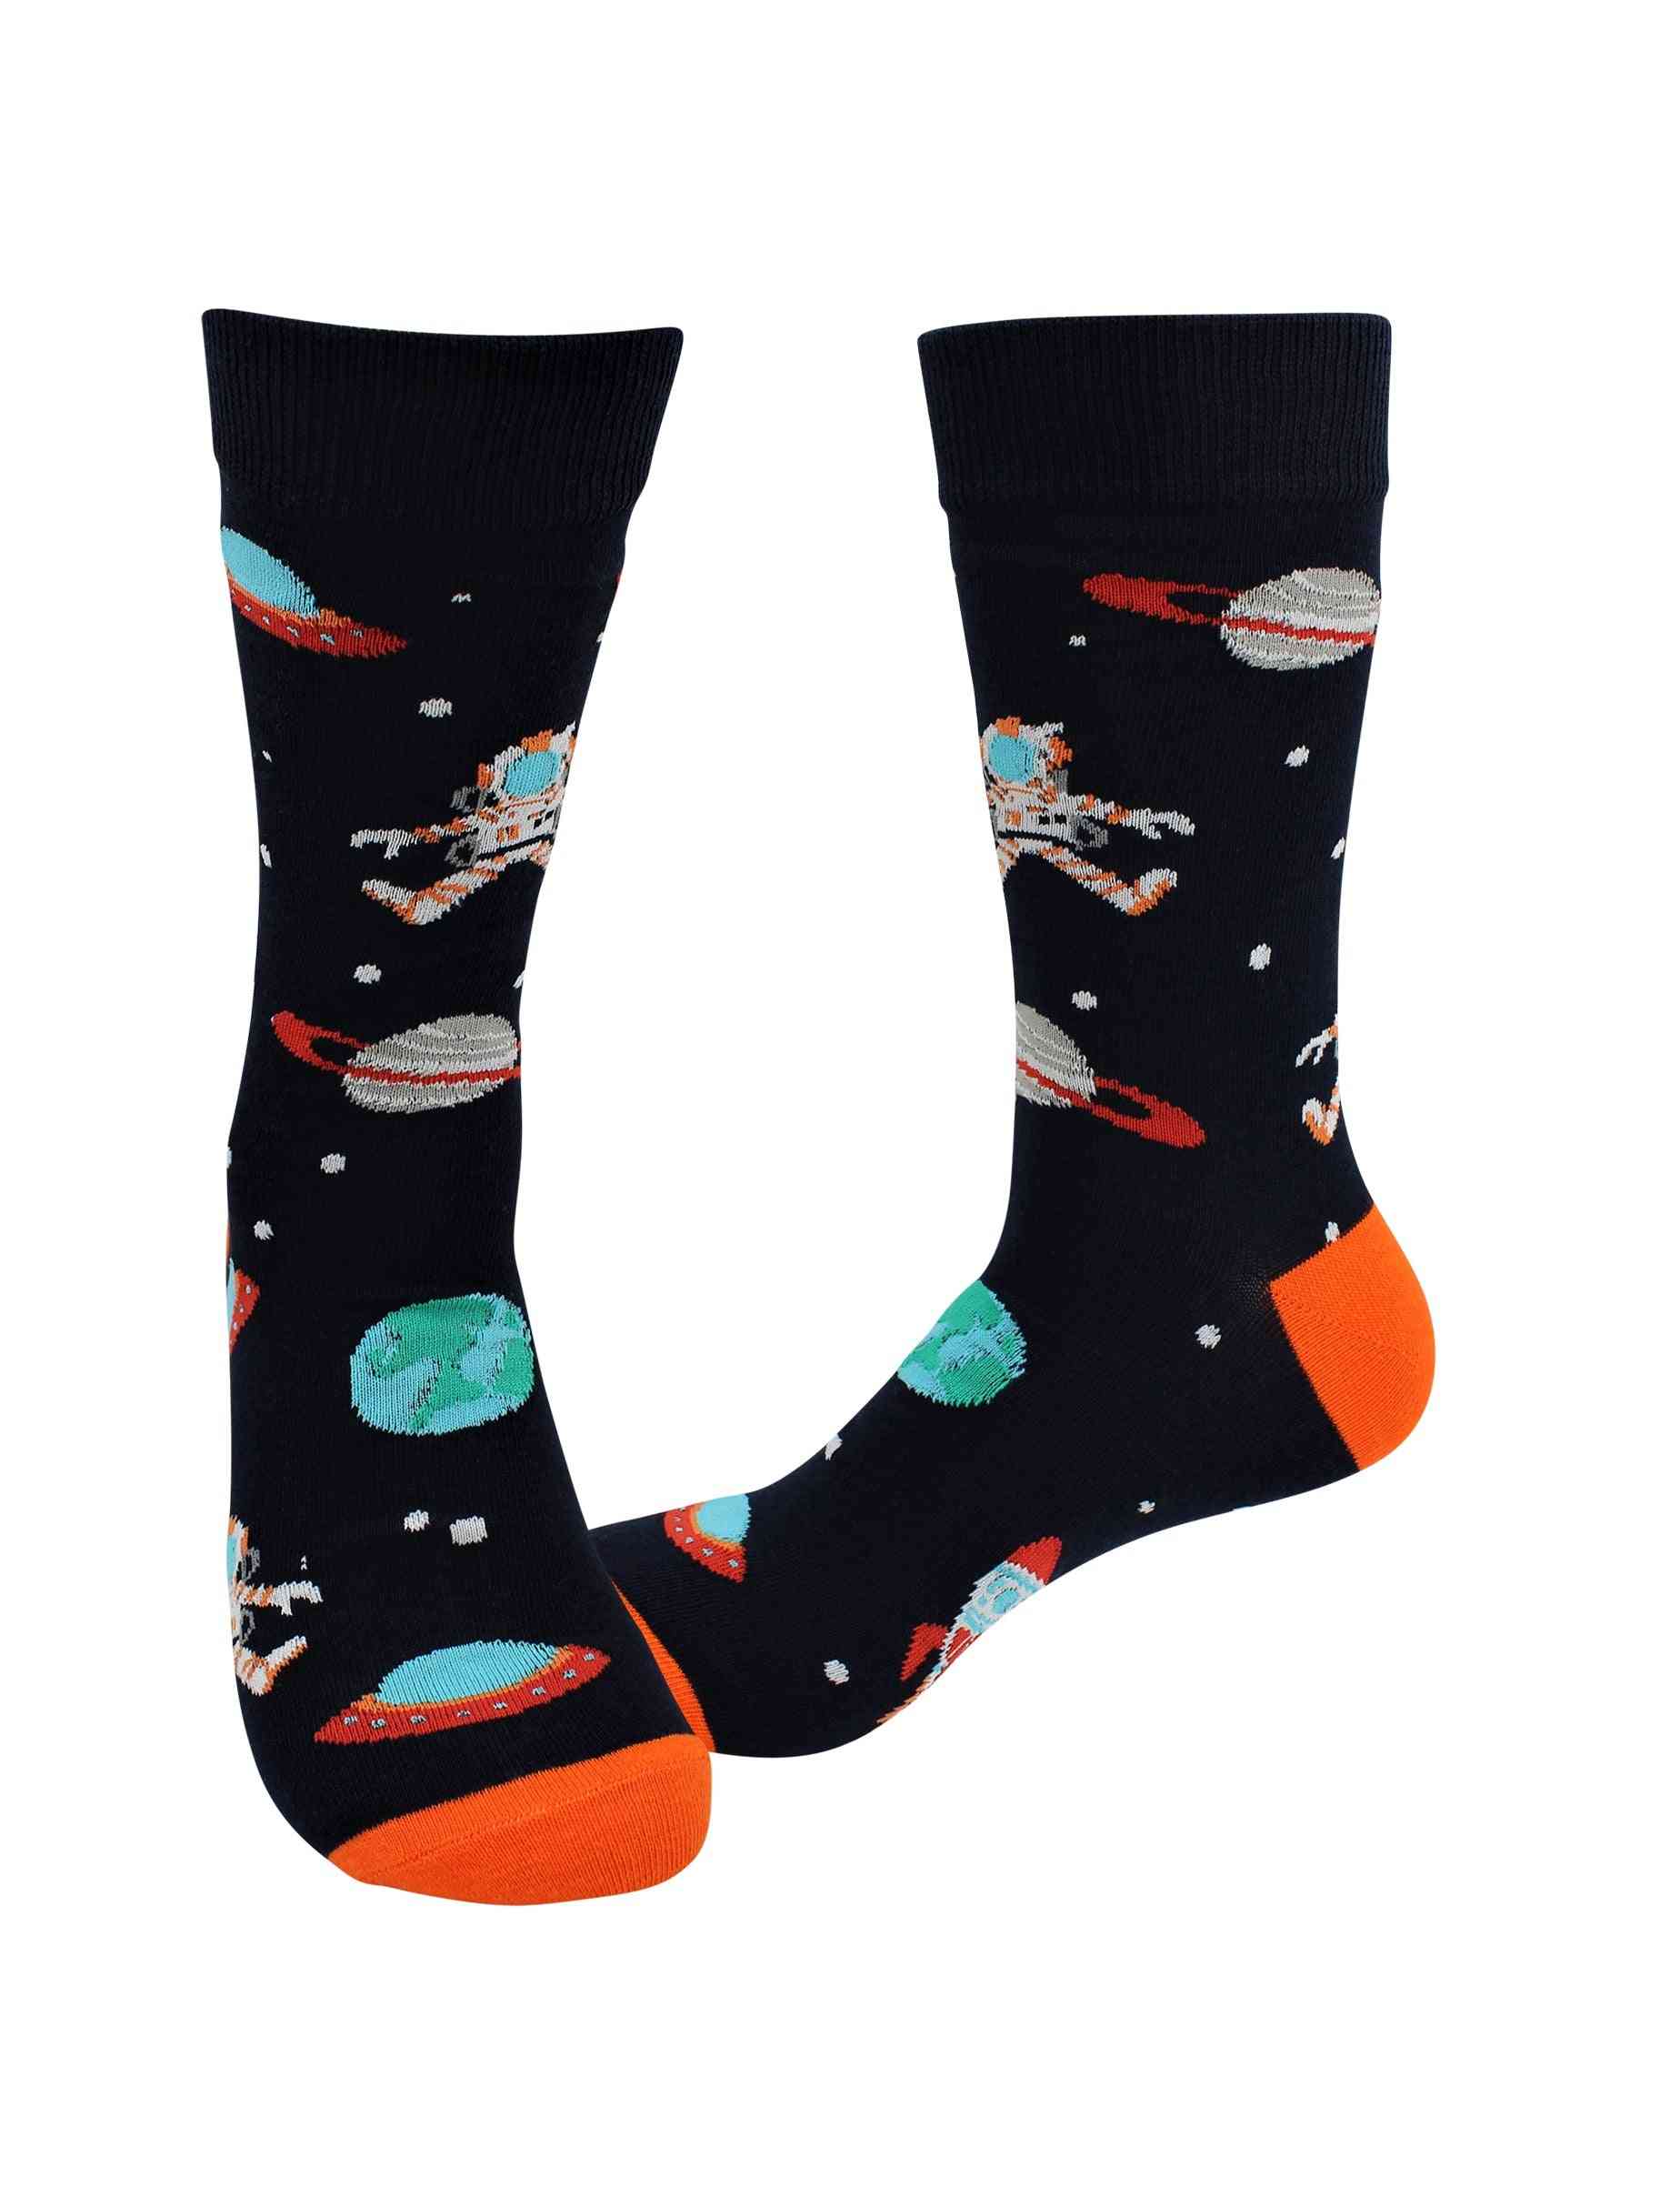 Beteg zokni - űr / űrhajós - le a falról alkalmi ruha zokni